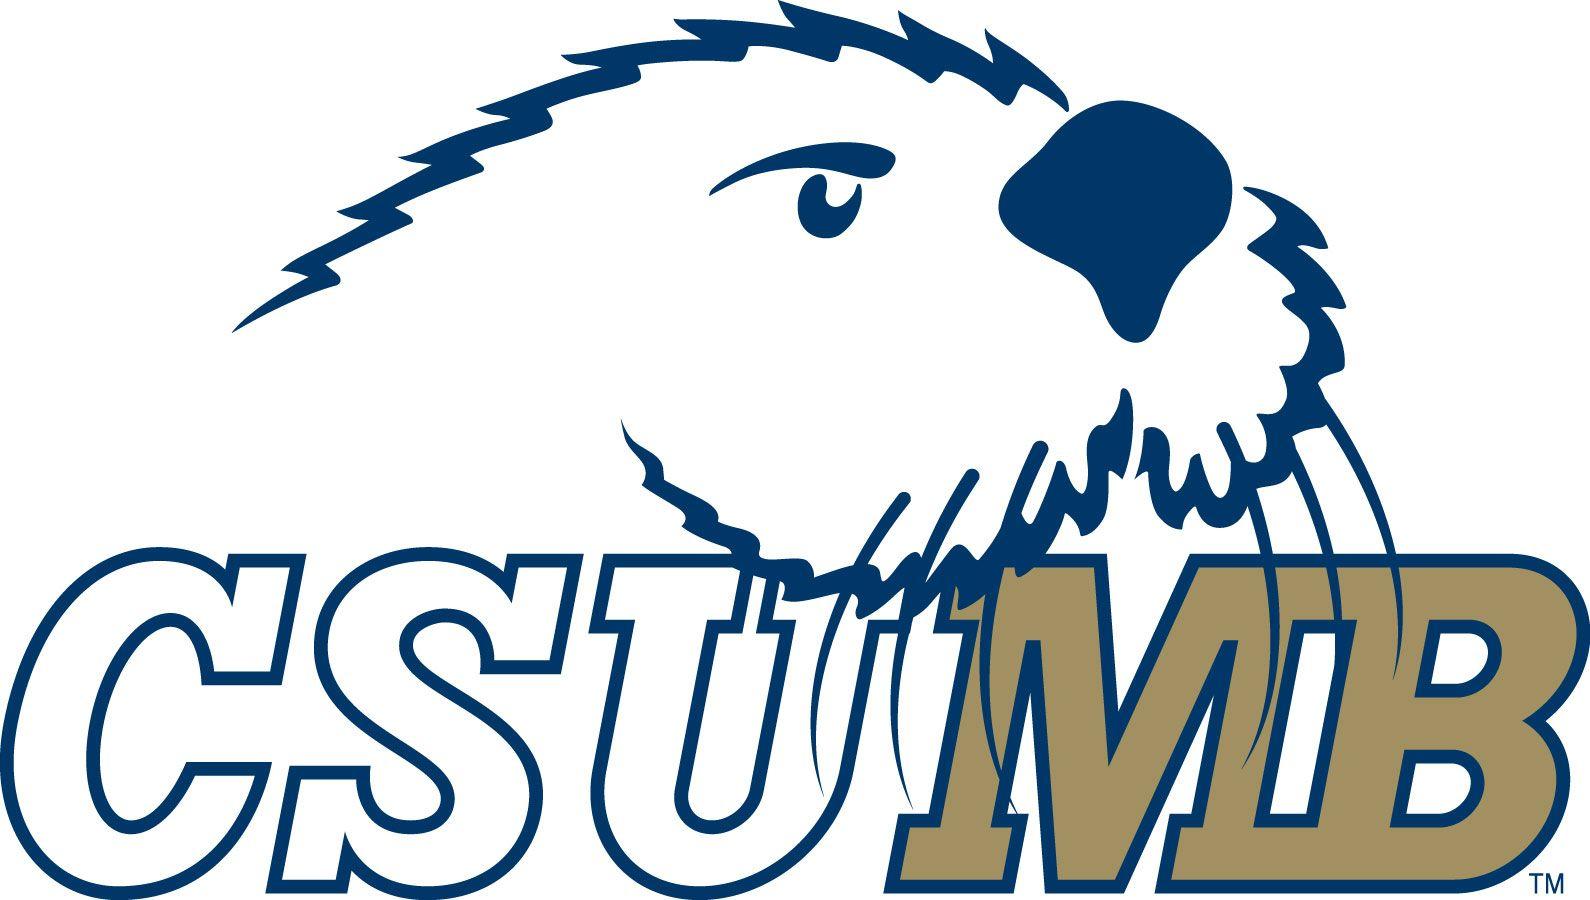 CSUMB Logo - Higher Education. Tab 2 Contact. Forrest CSUMB logo